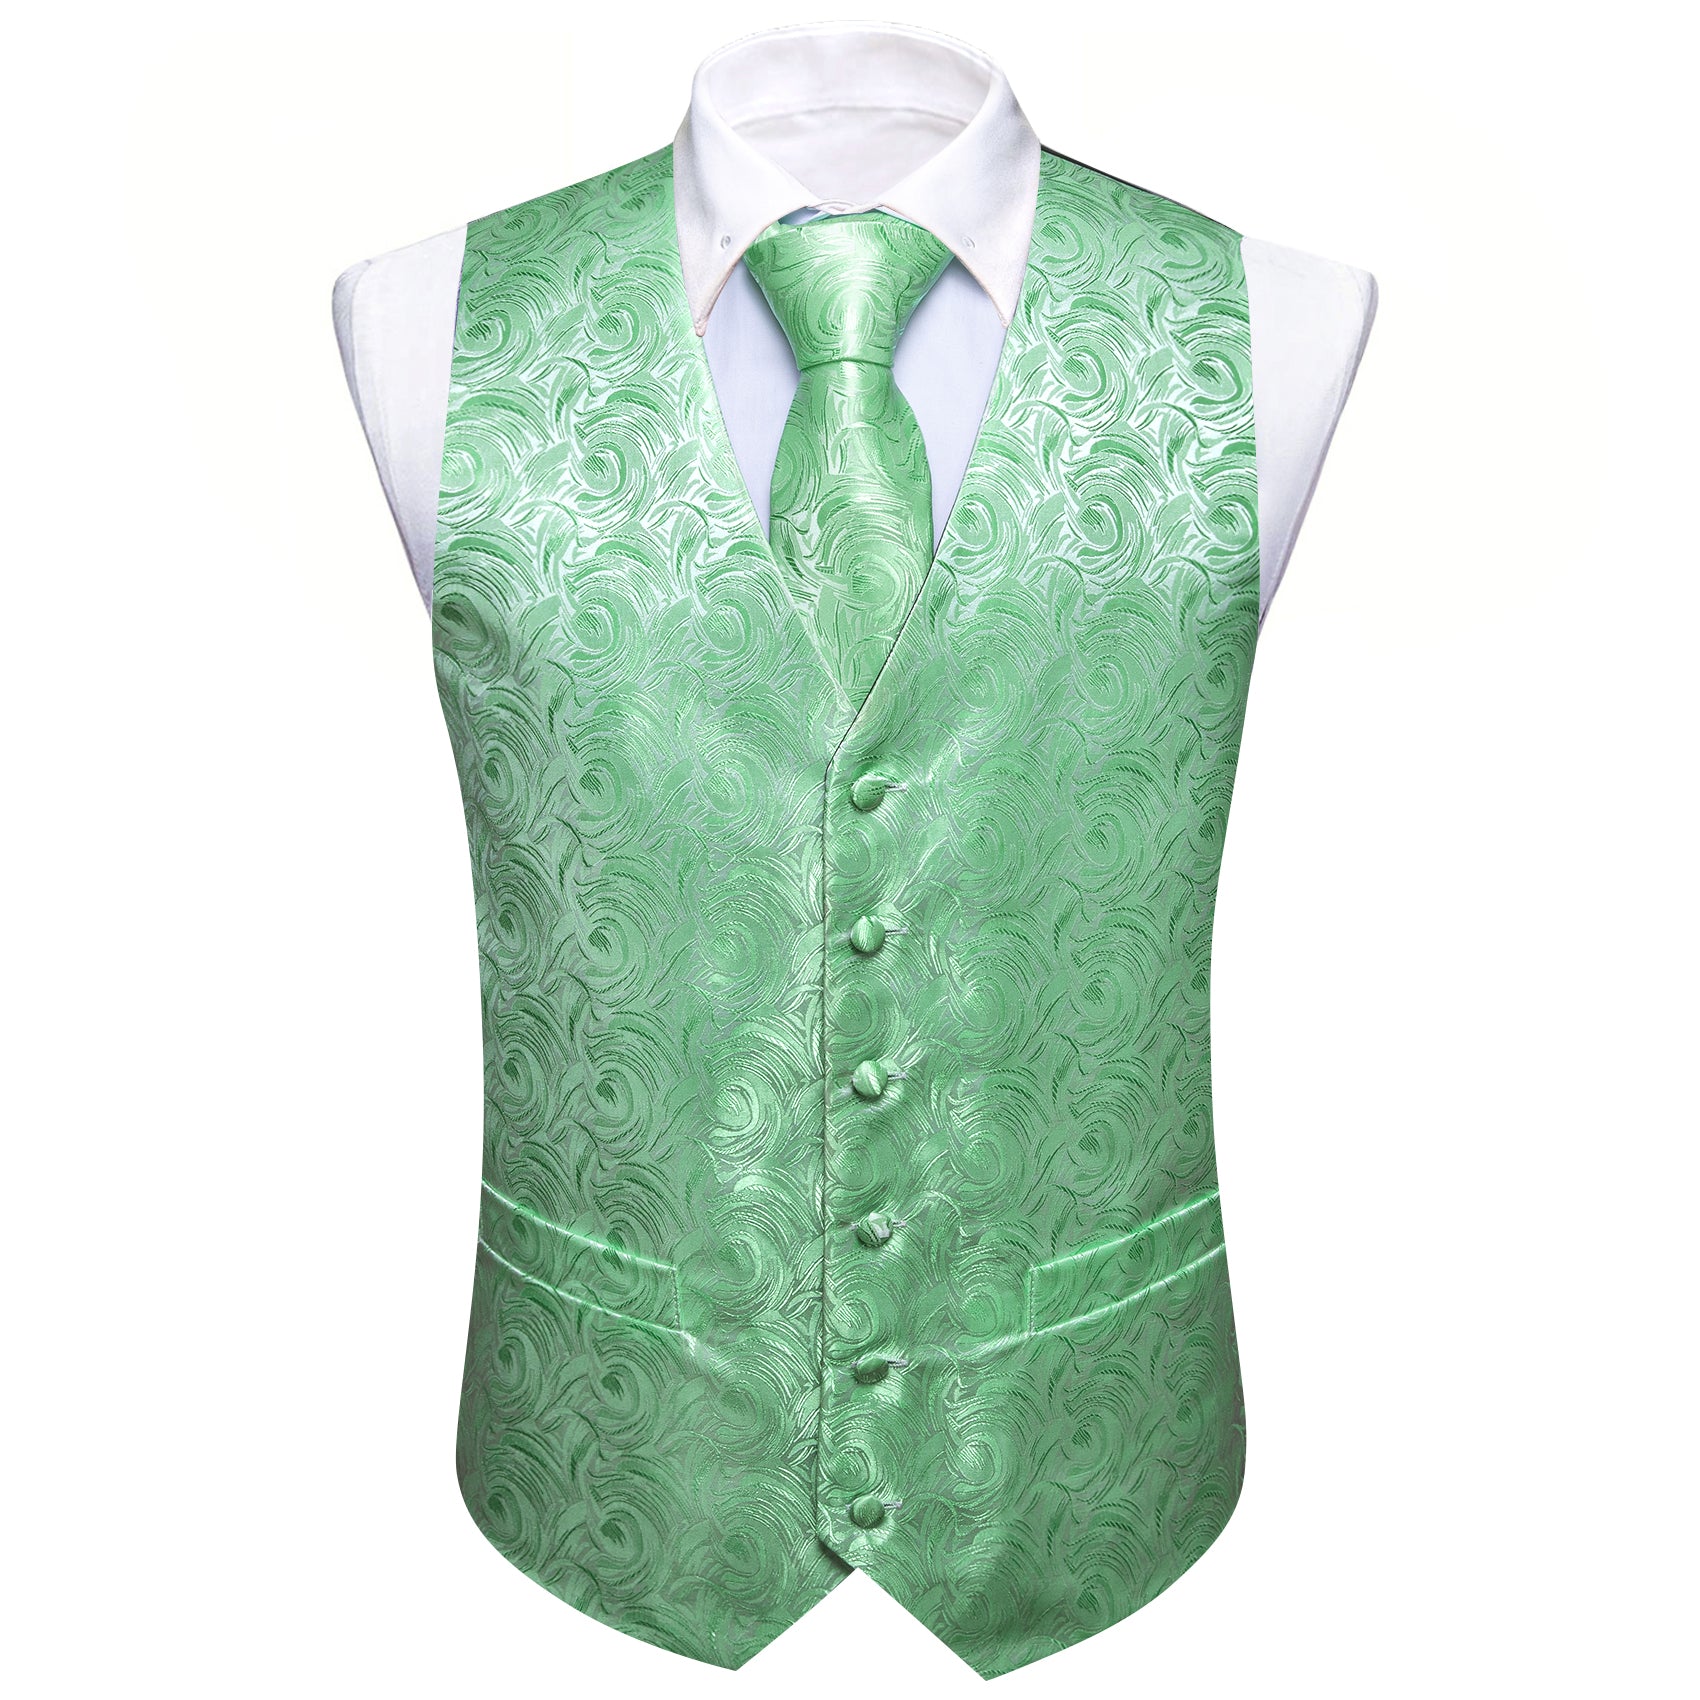 light green suit vest